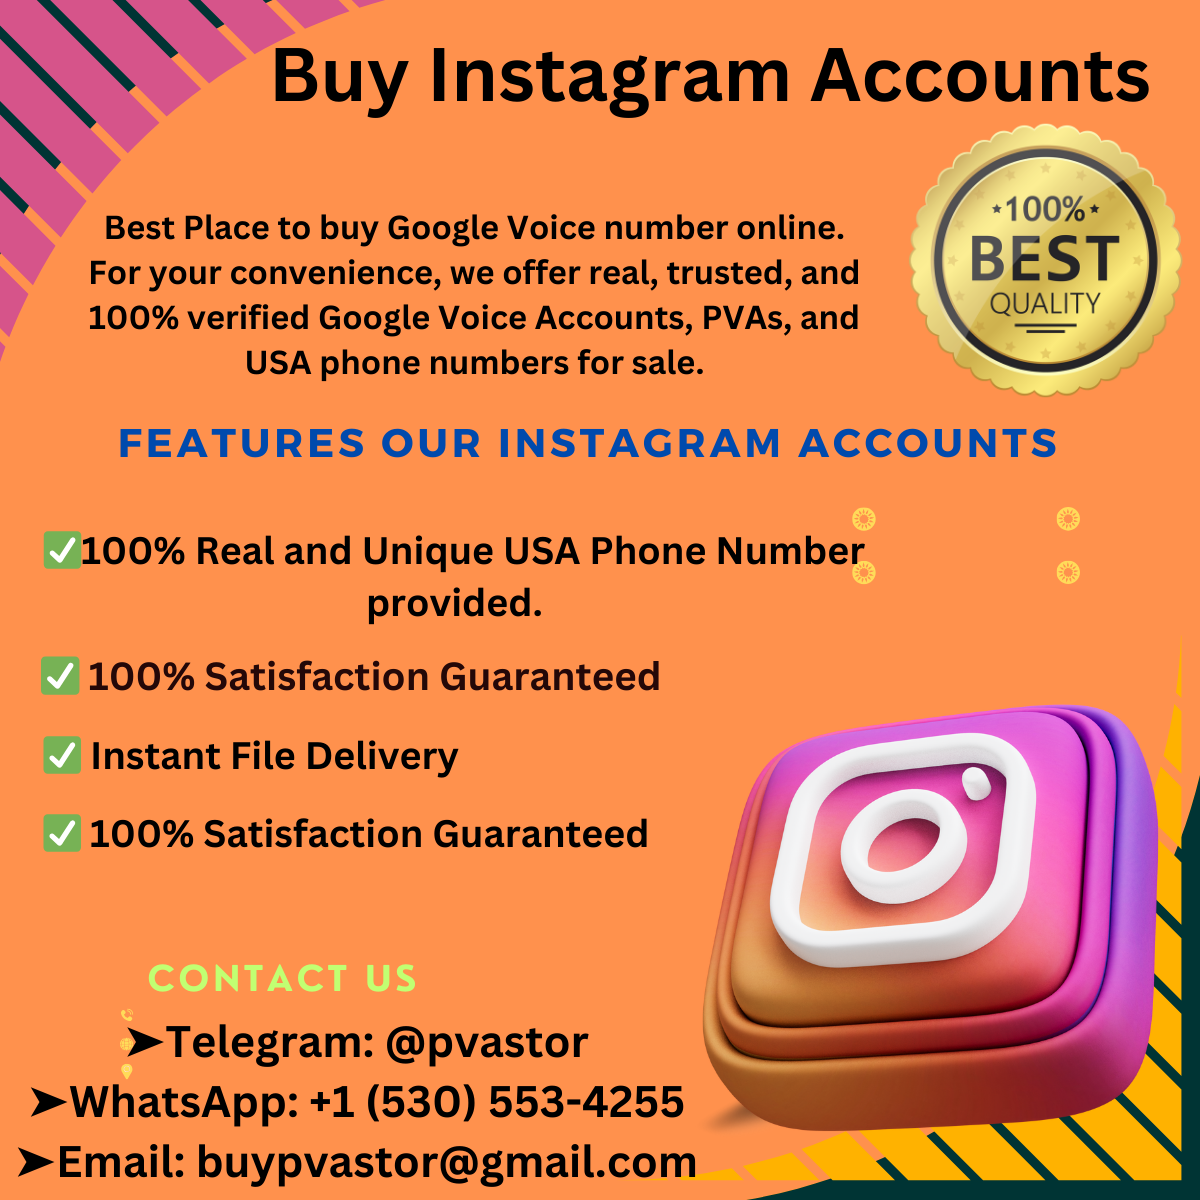 Buy Instagram Accounts- Best Way to Grow Your Business!